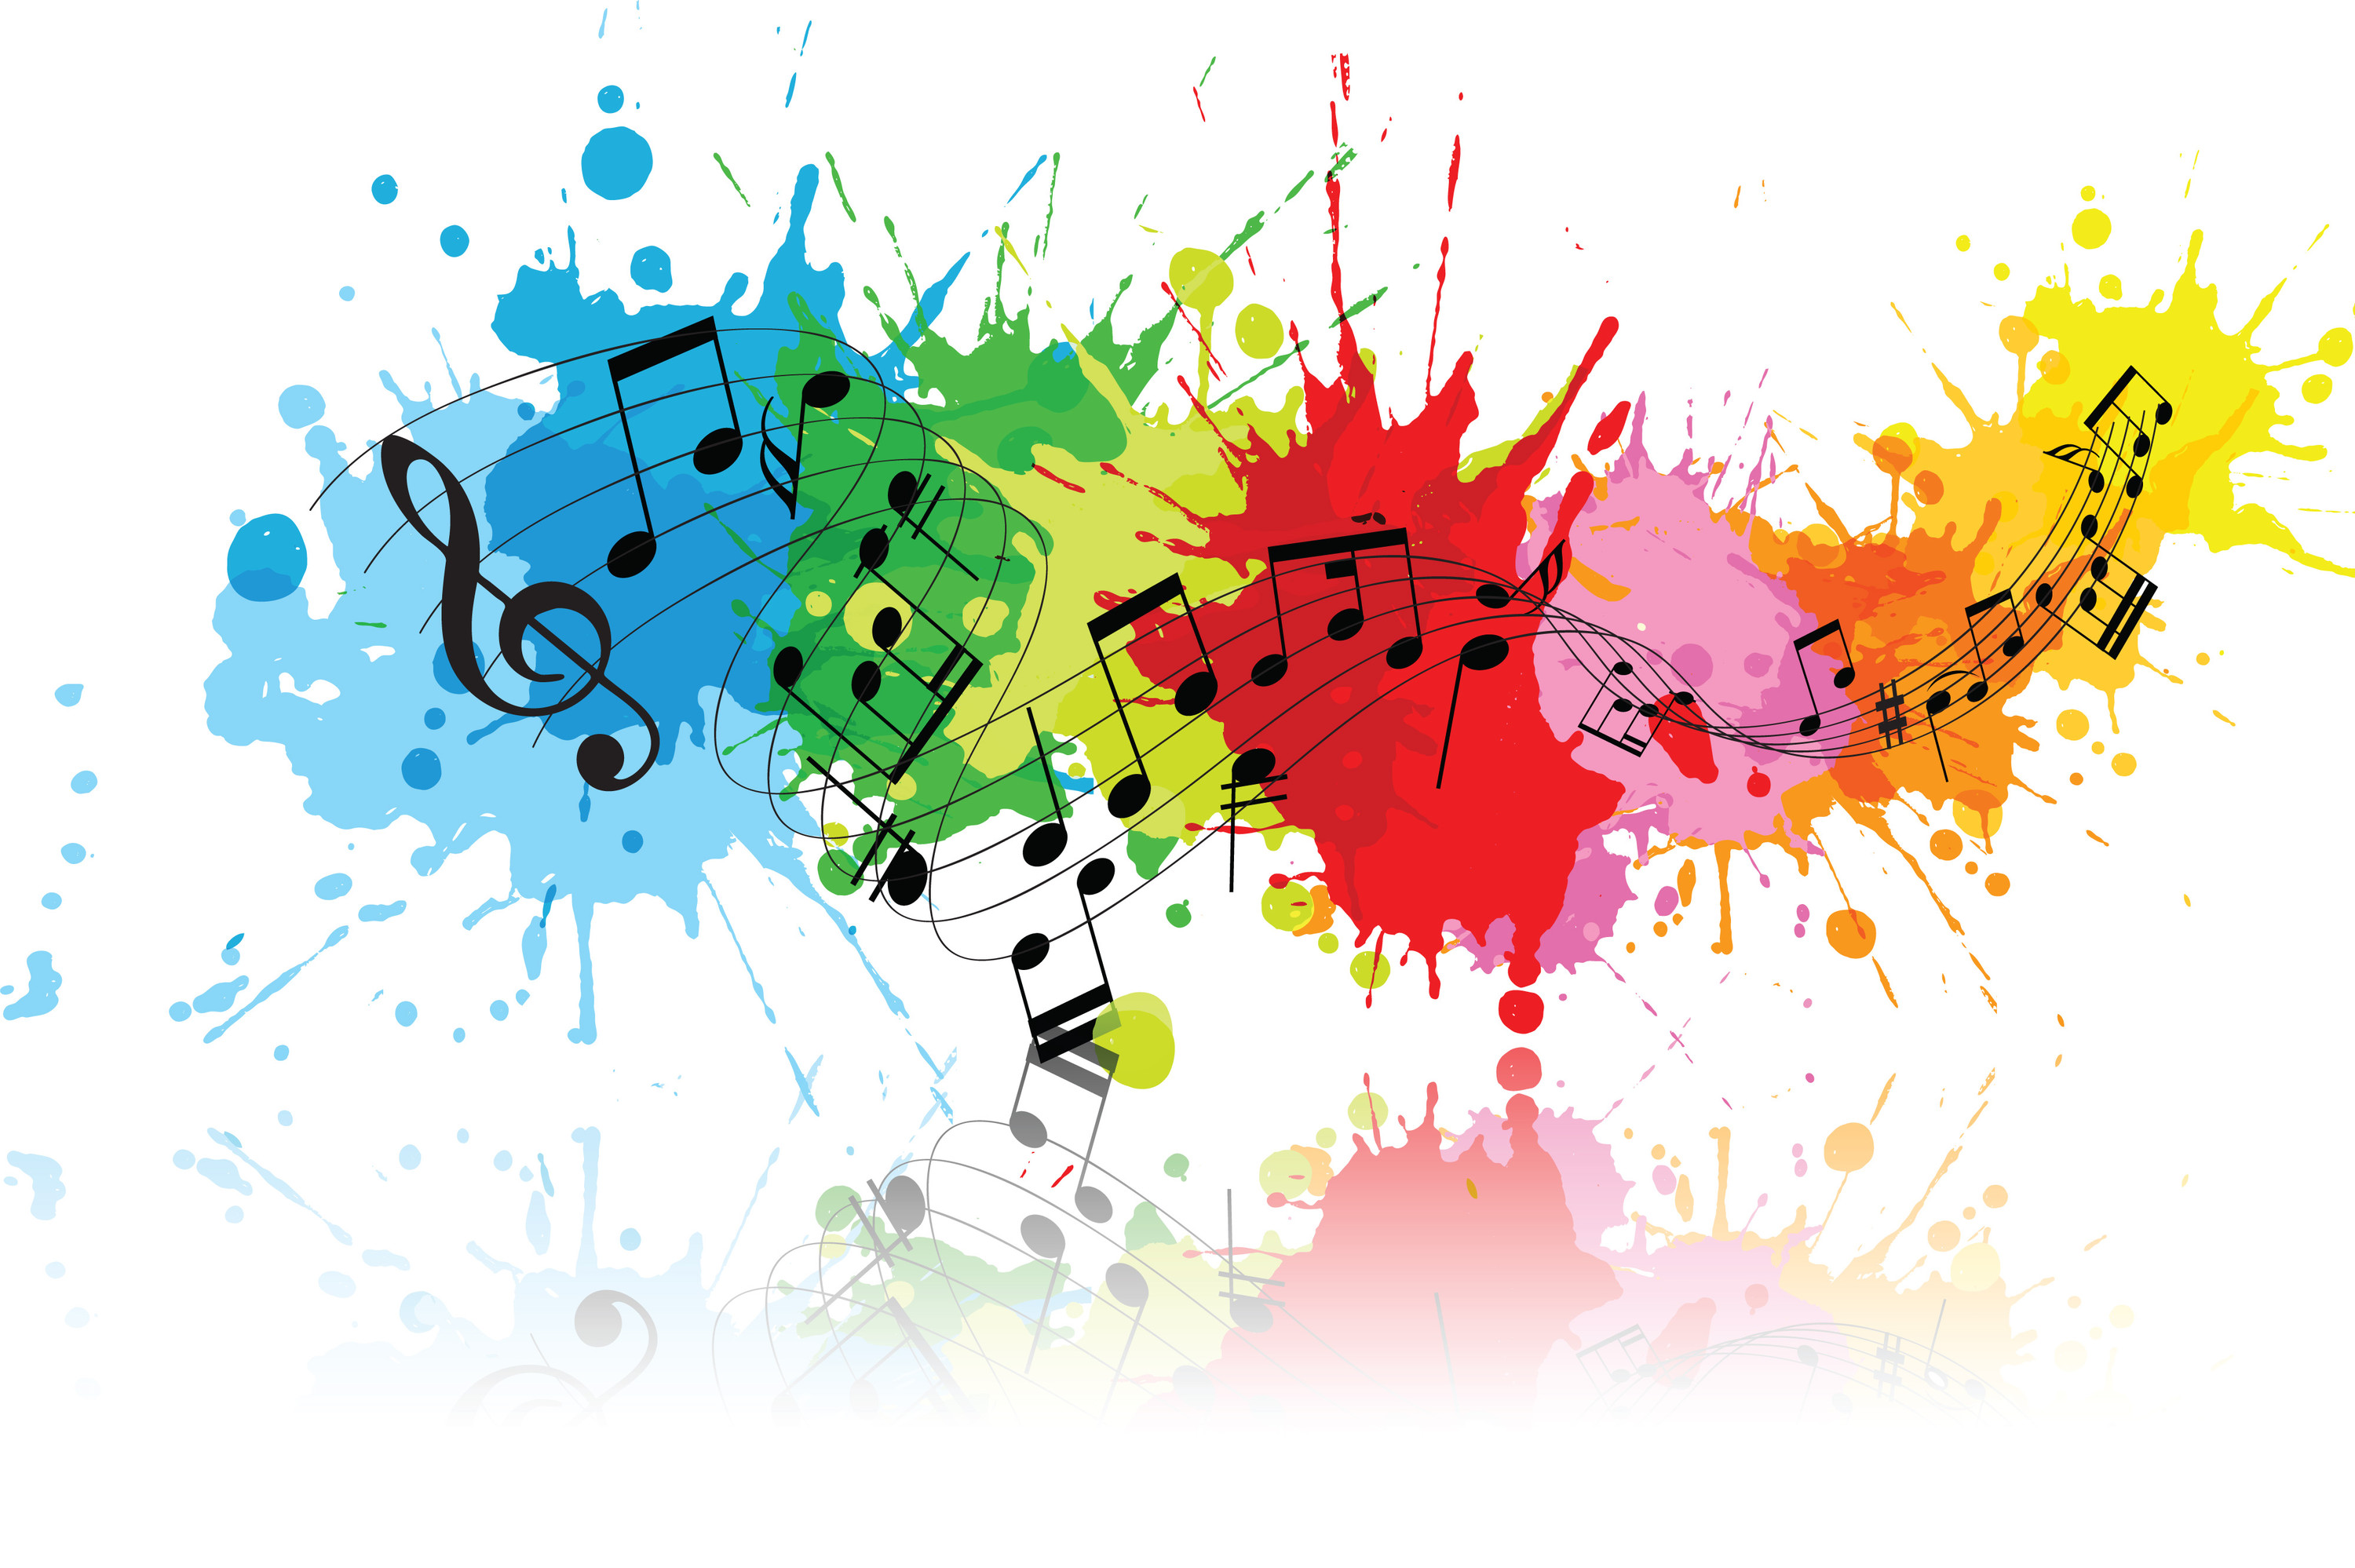 מהפכת המוזיקה בחינוך: הוכפל מספר הקונסרבטוריונים ובתי הספר המנגנים